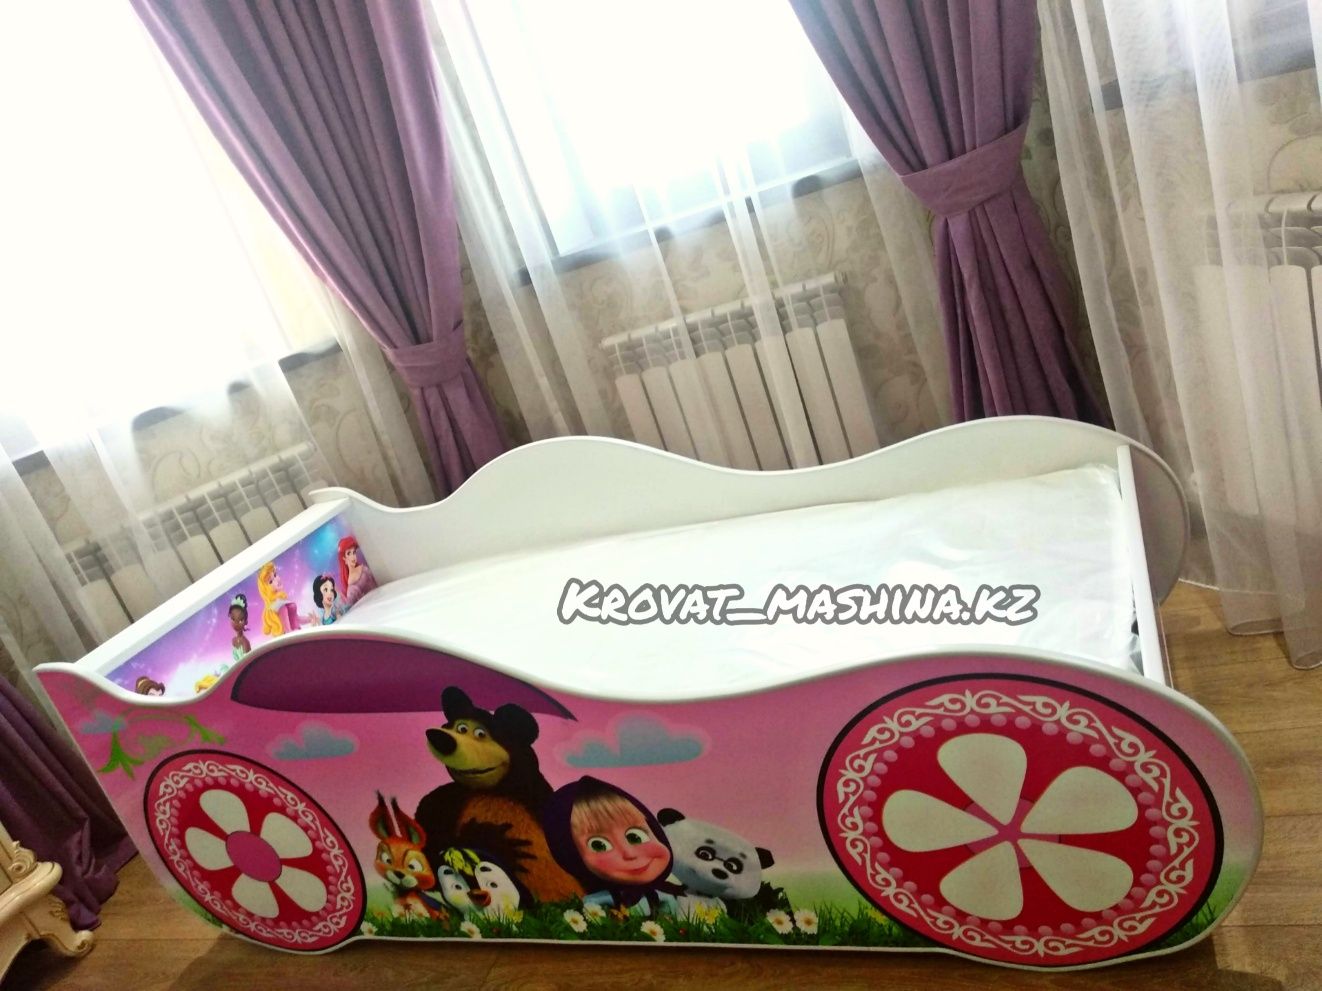 Детская кровать машина + матрас всего 45 000₸ с бесплатной доставкой.